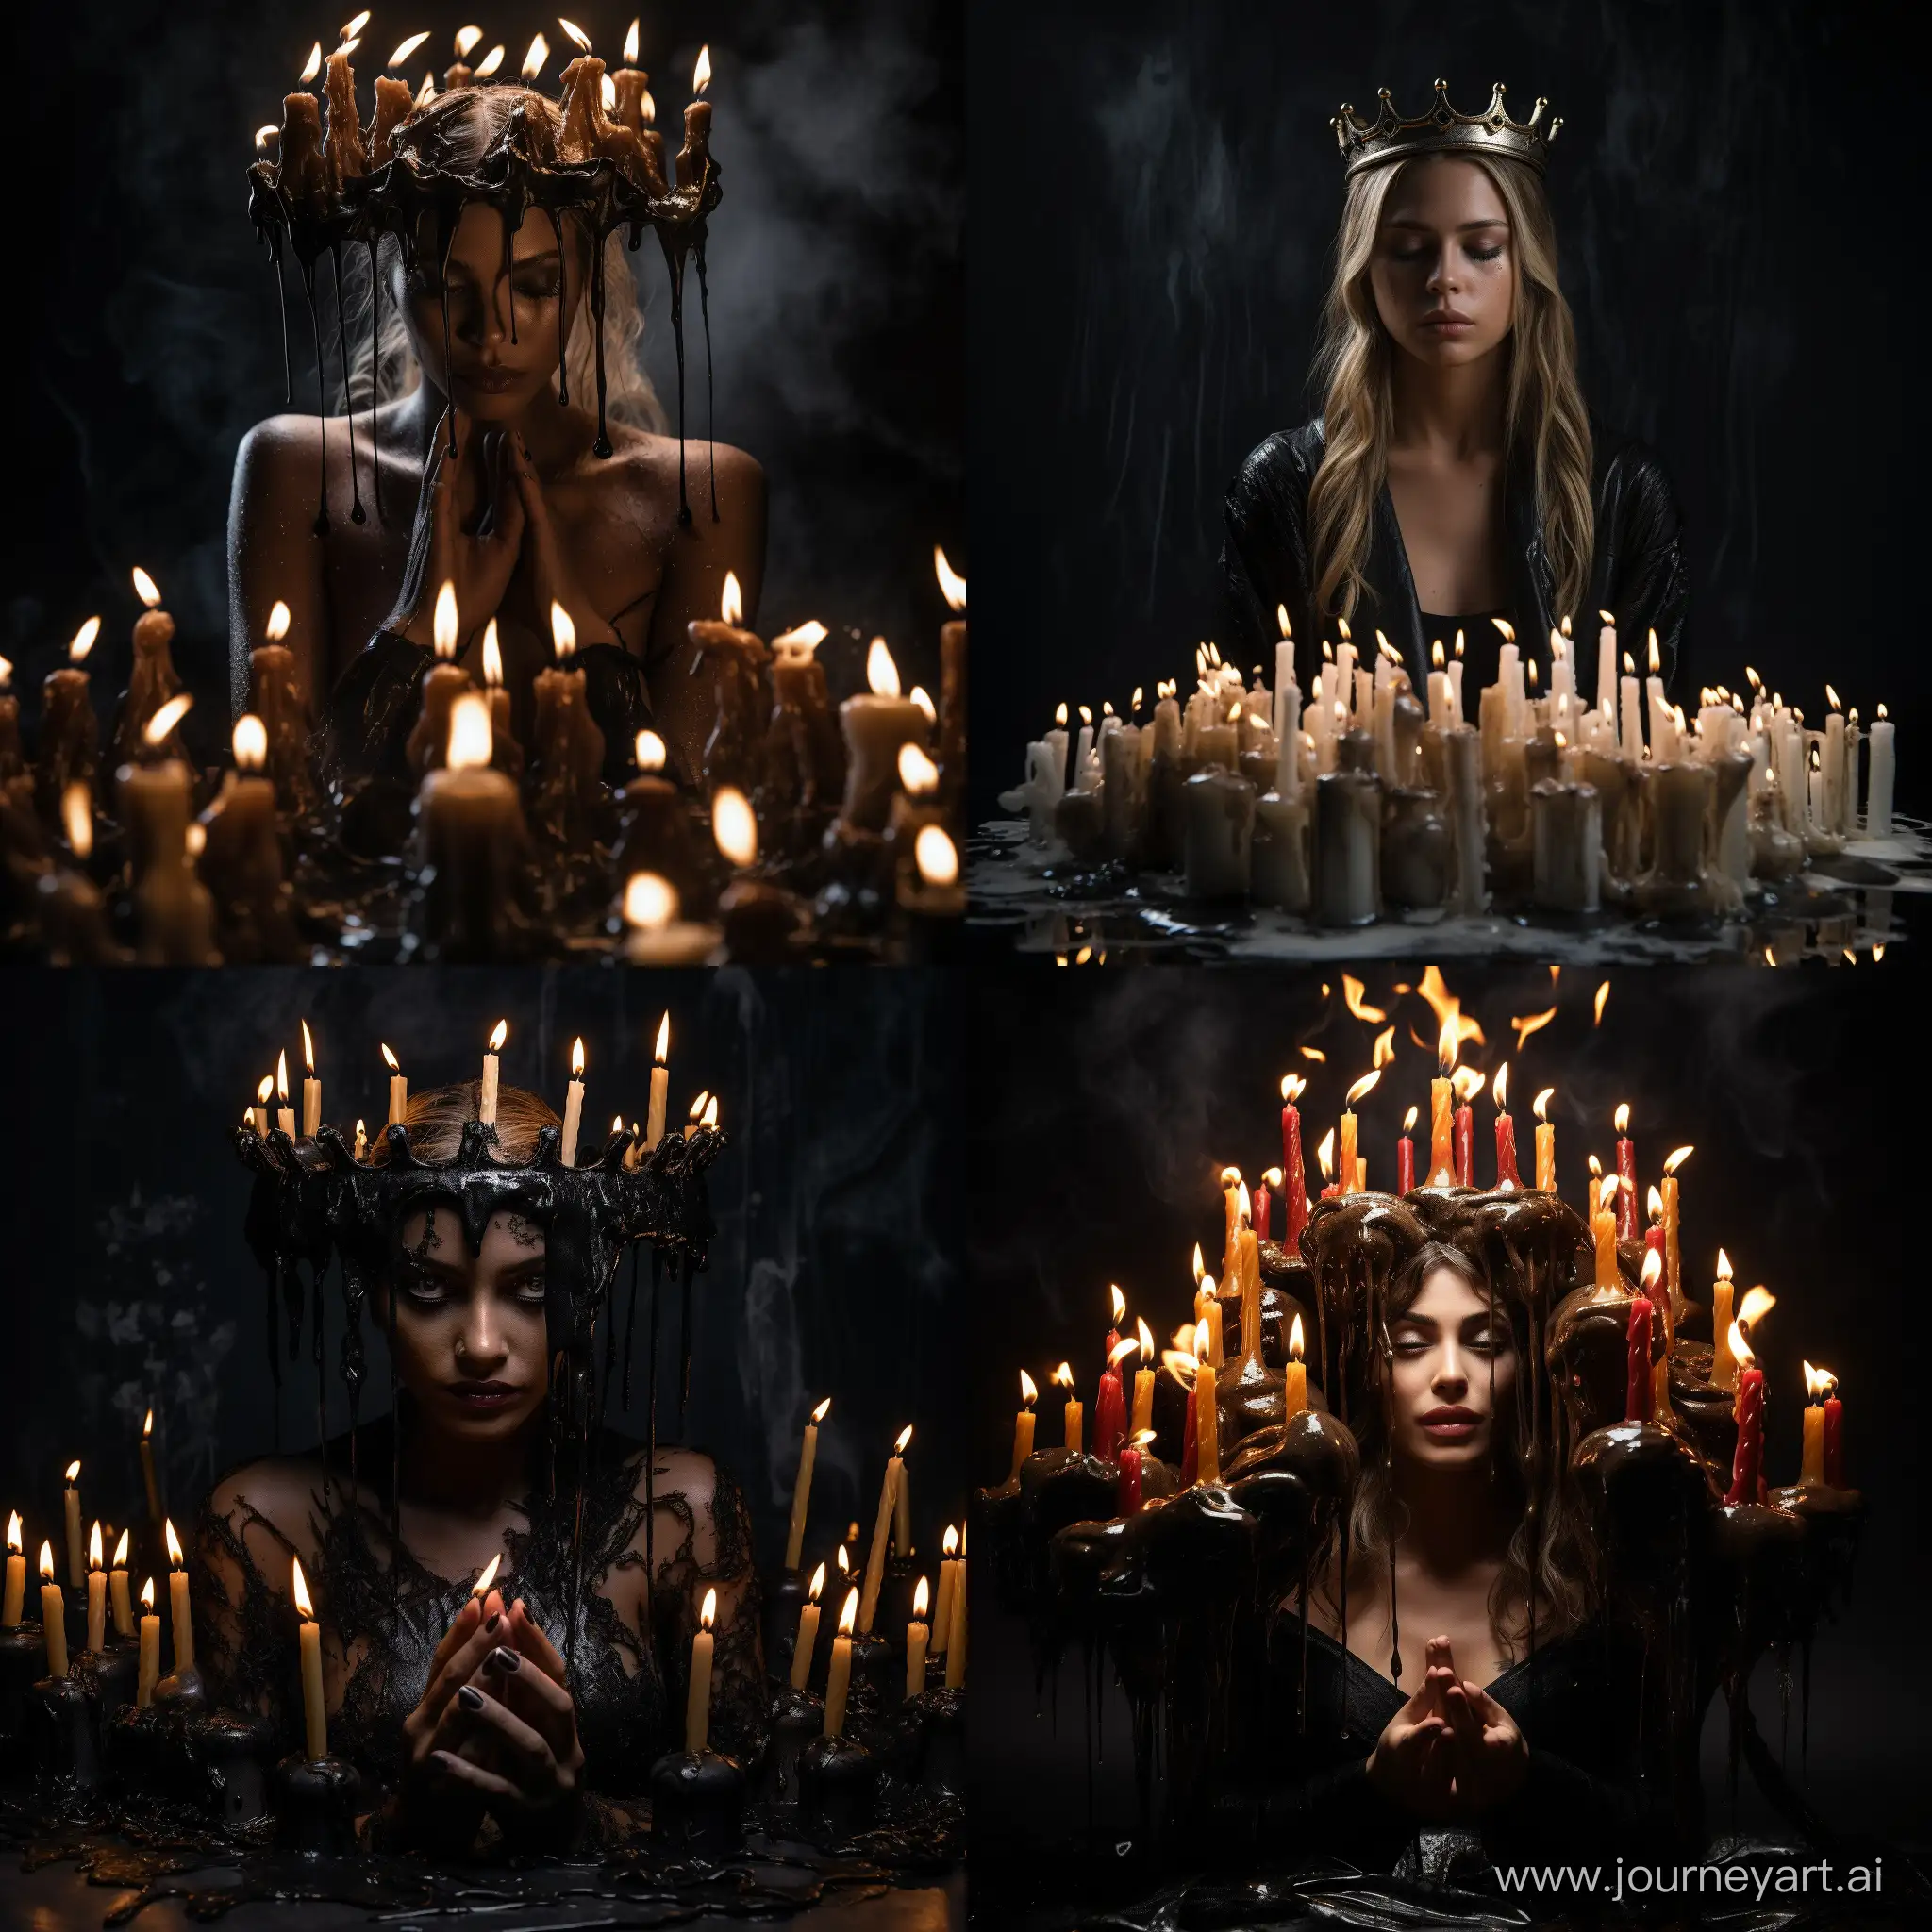 королева в короне из свечей, украшения из оплавленных свечей, разные горящие свечи, подсвечники, стекает воск, сказочная иллюстрация, реализм, как на фото, черный фон, яркий контрастный свет, магия